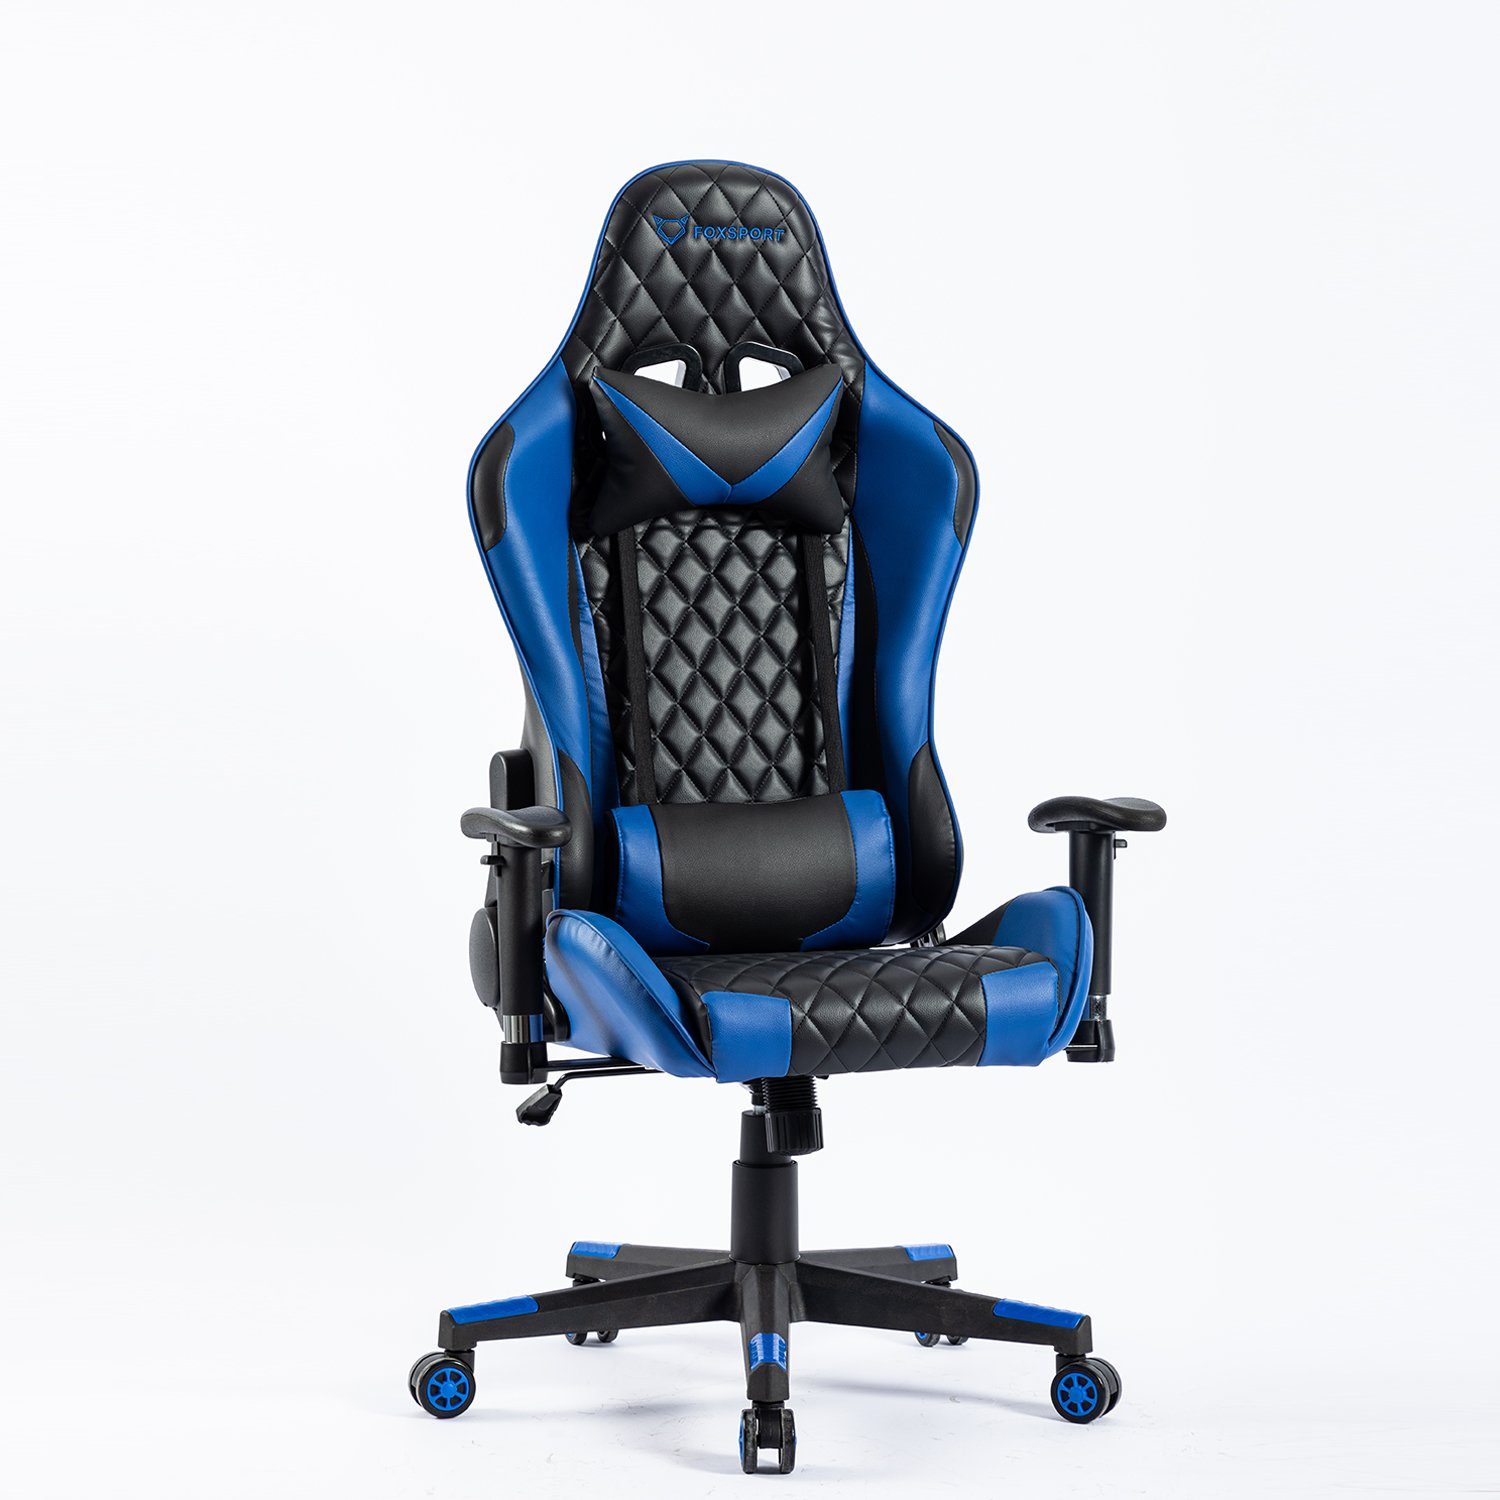 IKIDO Gaming-Stuhl Ergonomischer Spielestuhl (Professioneller Gamingstuhl), Verstellbare Rückenlehne, Ergonomischer Rahmen, Stoßdämpfendes Kissen blau